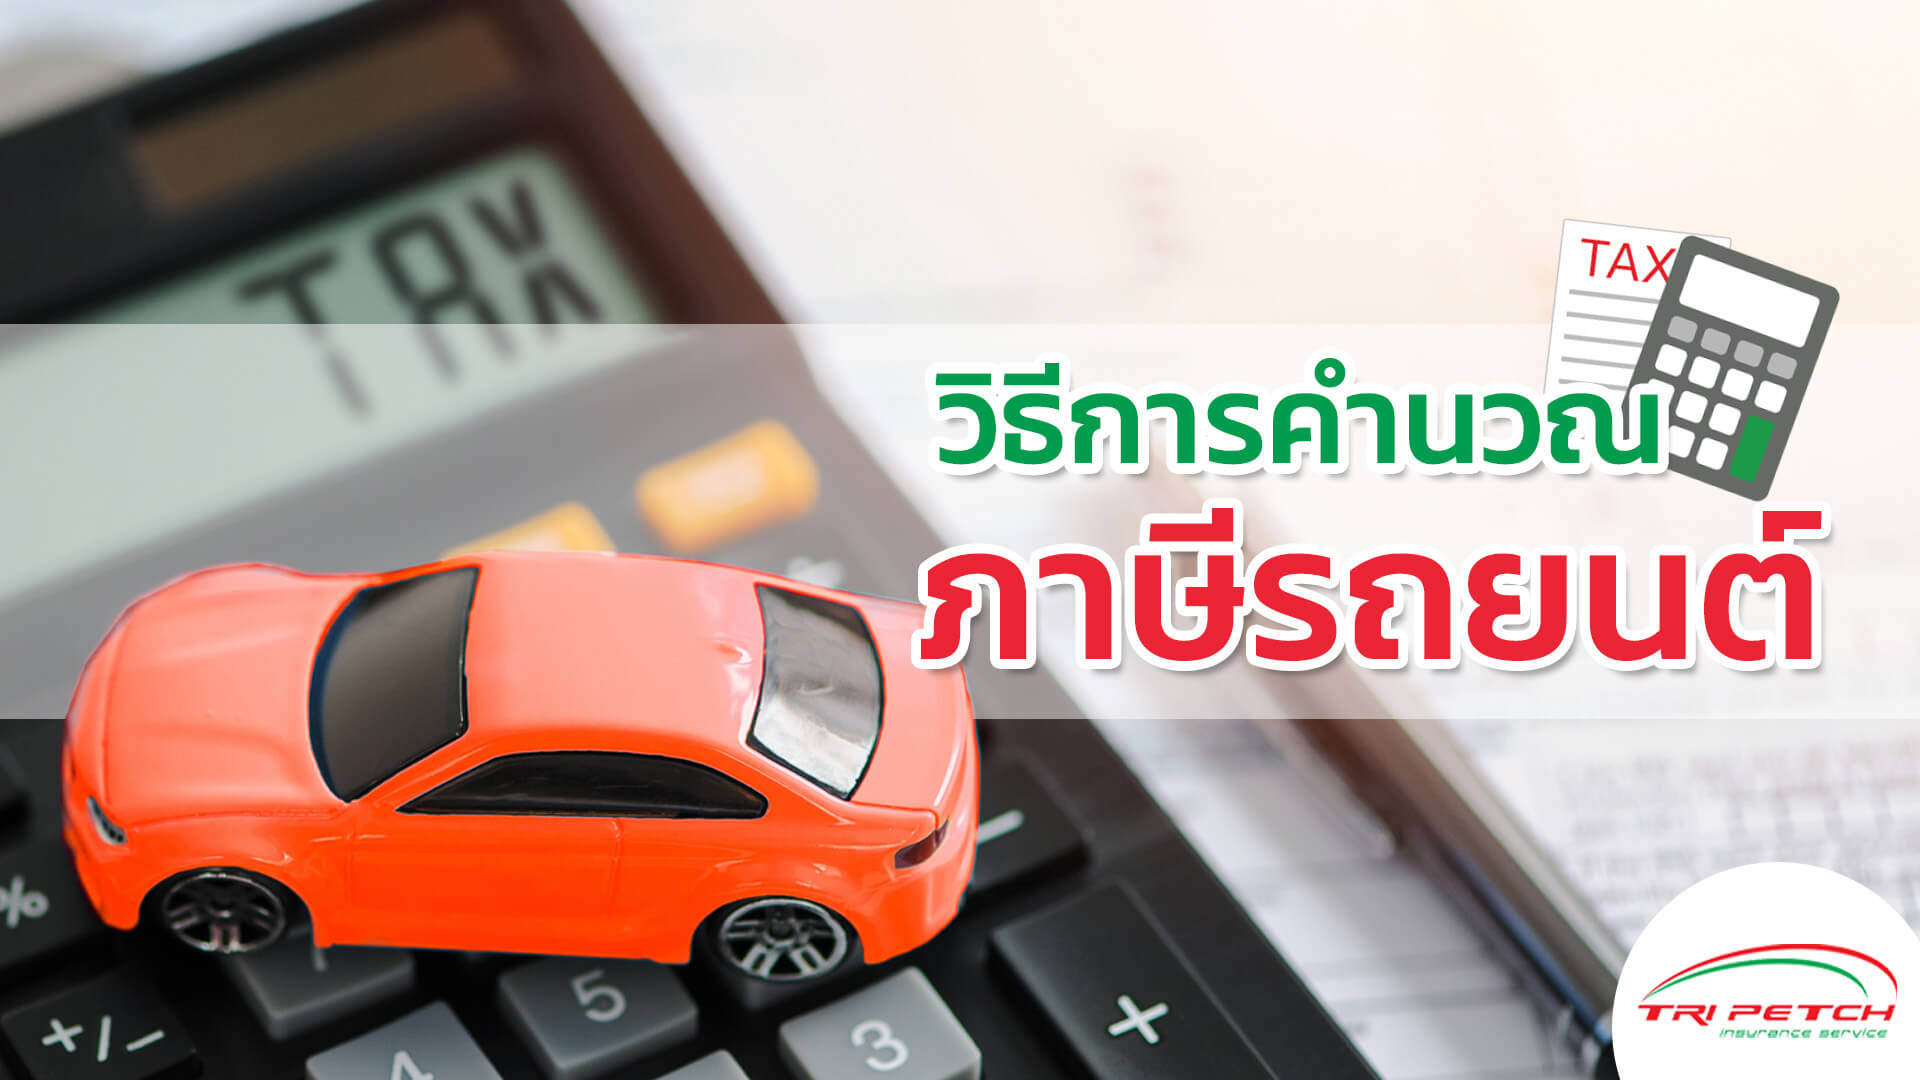 การคำนวณภาษีรถยนต์ 2565 แบบเข้าใจง่าย | Tpis